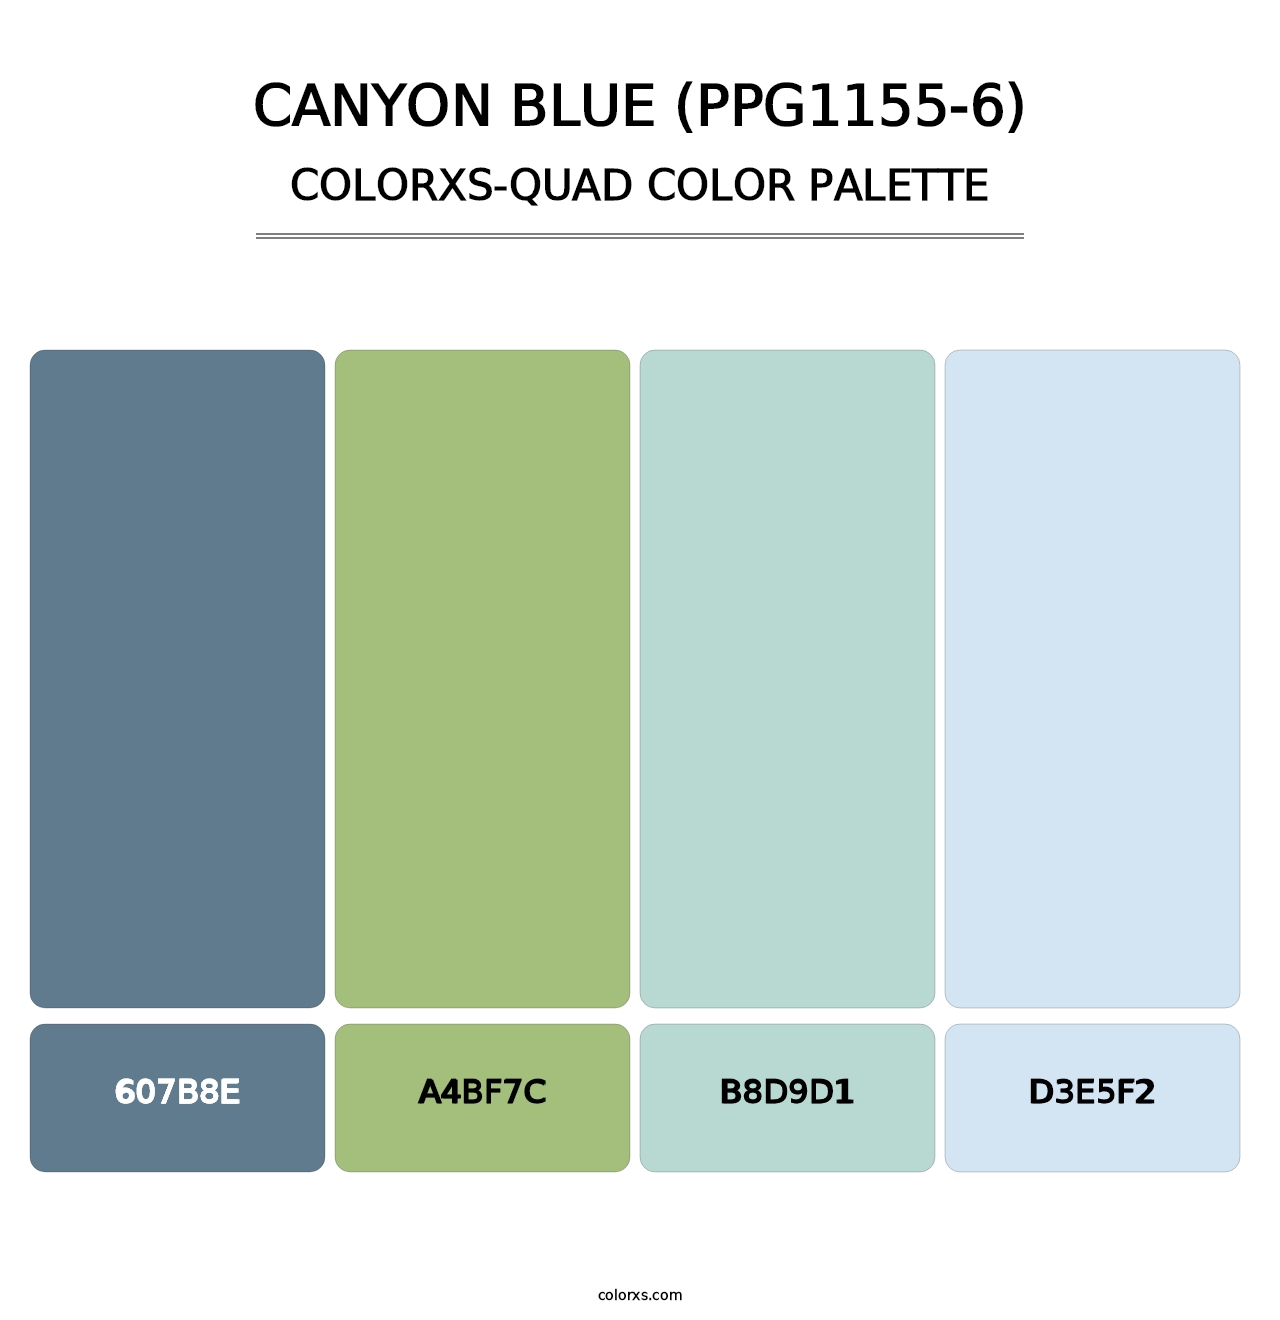 Canyon Blue (PPG1155-6) - Colorxs Quad Palette